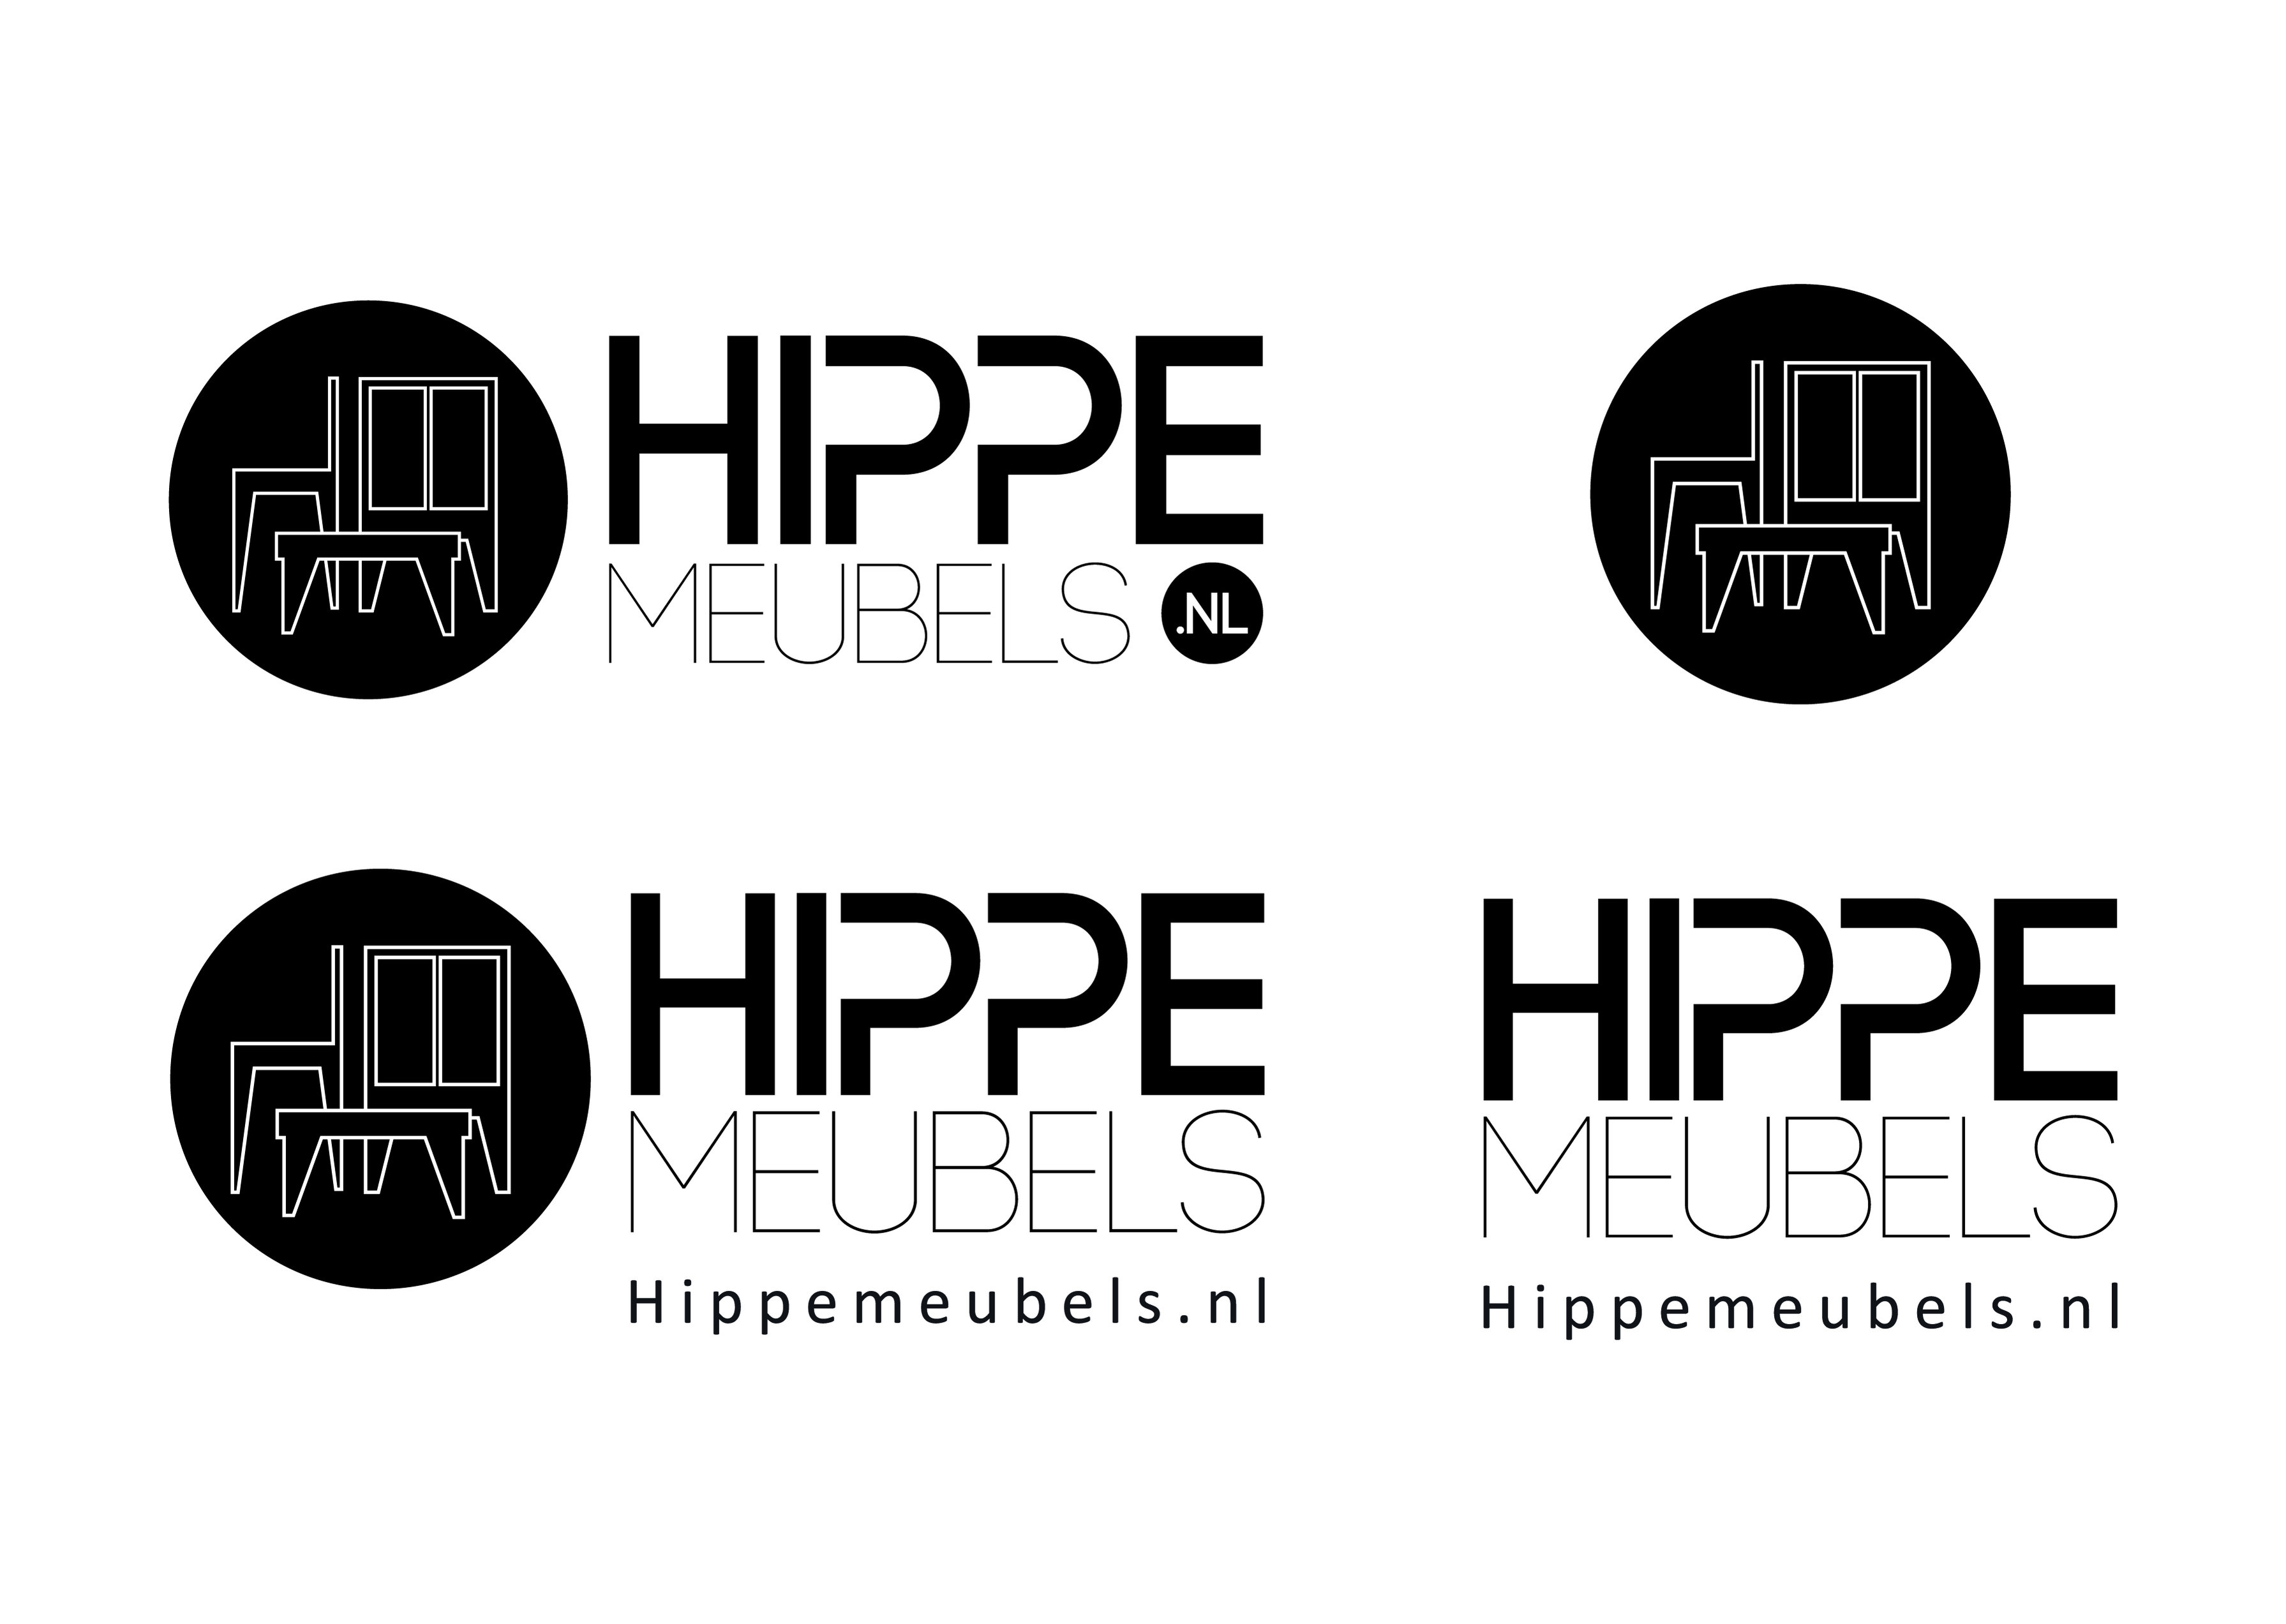 Hippemeubels domein+logo-26569_hippemeubelsnl-2017-jpg